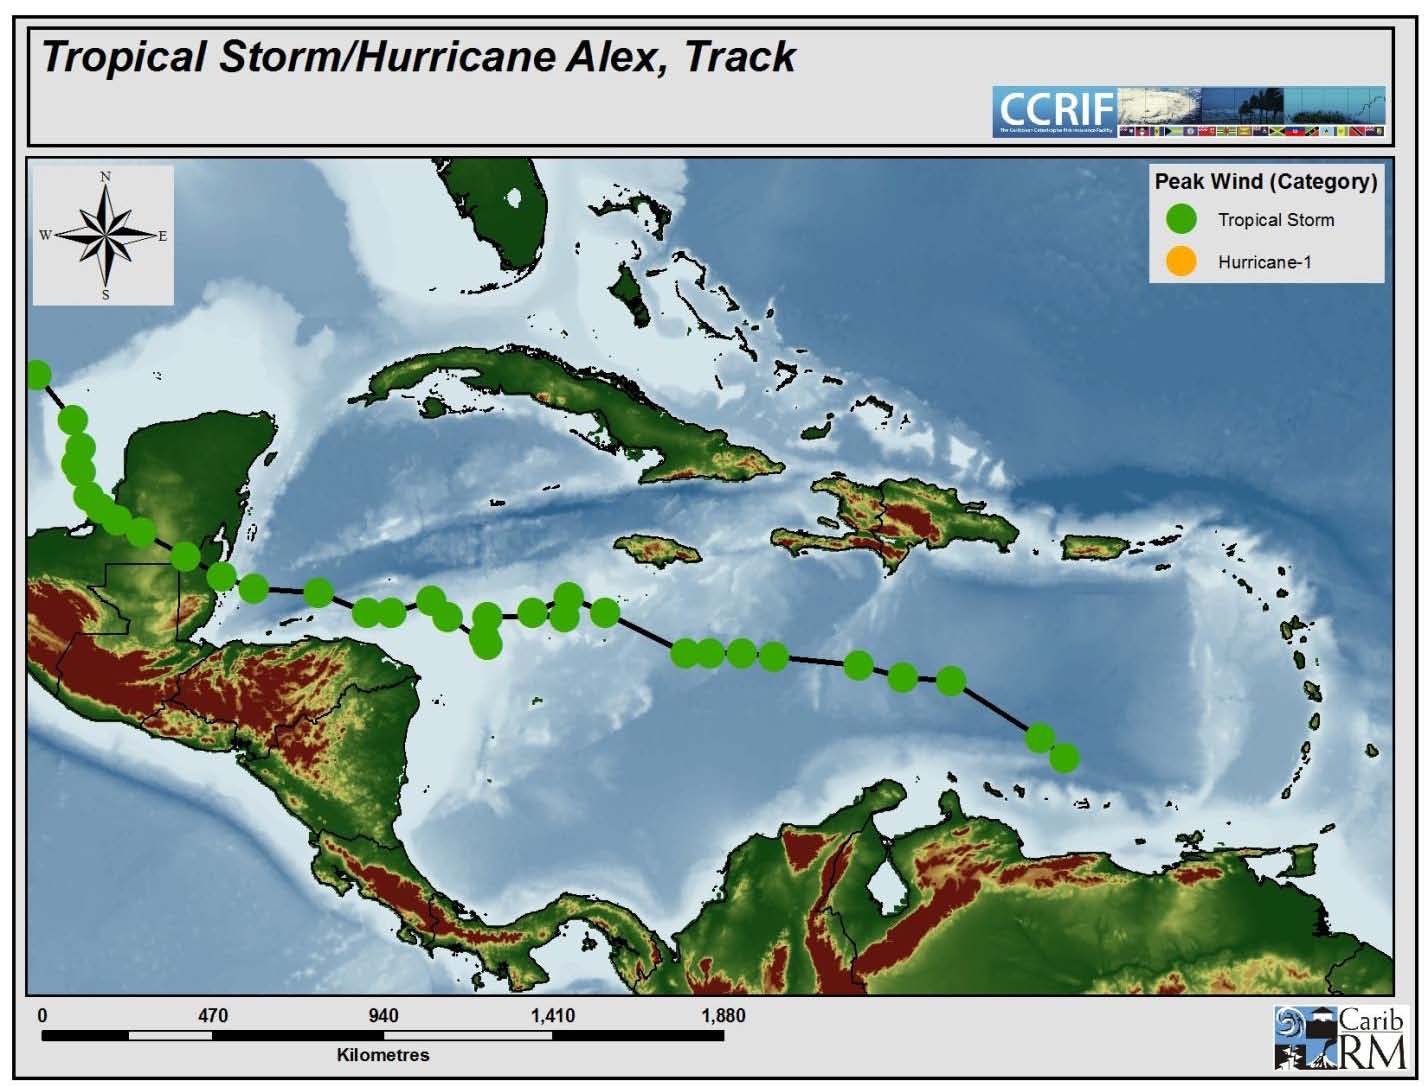 Event Briefing - Tropical Storm/Hurricane Alex